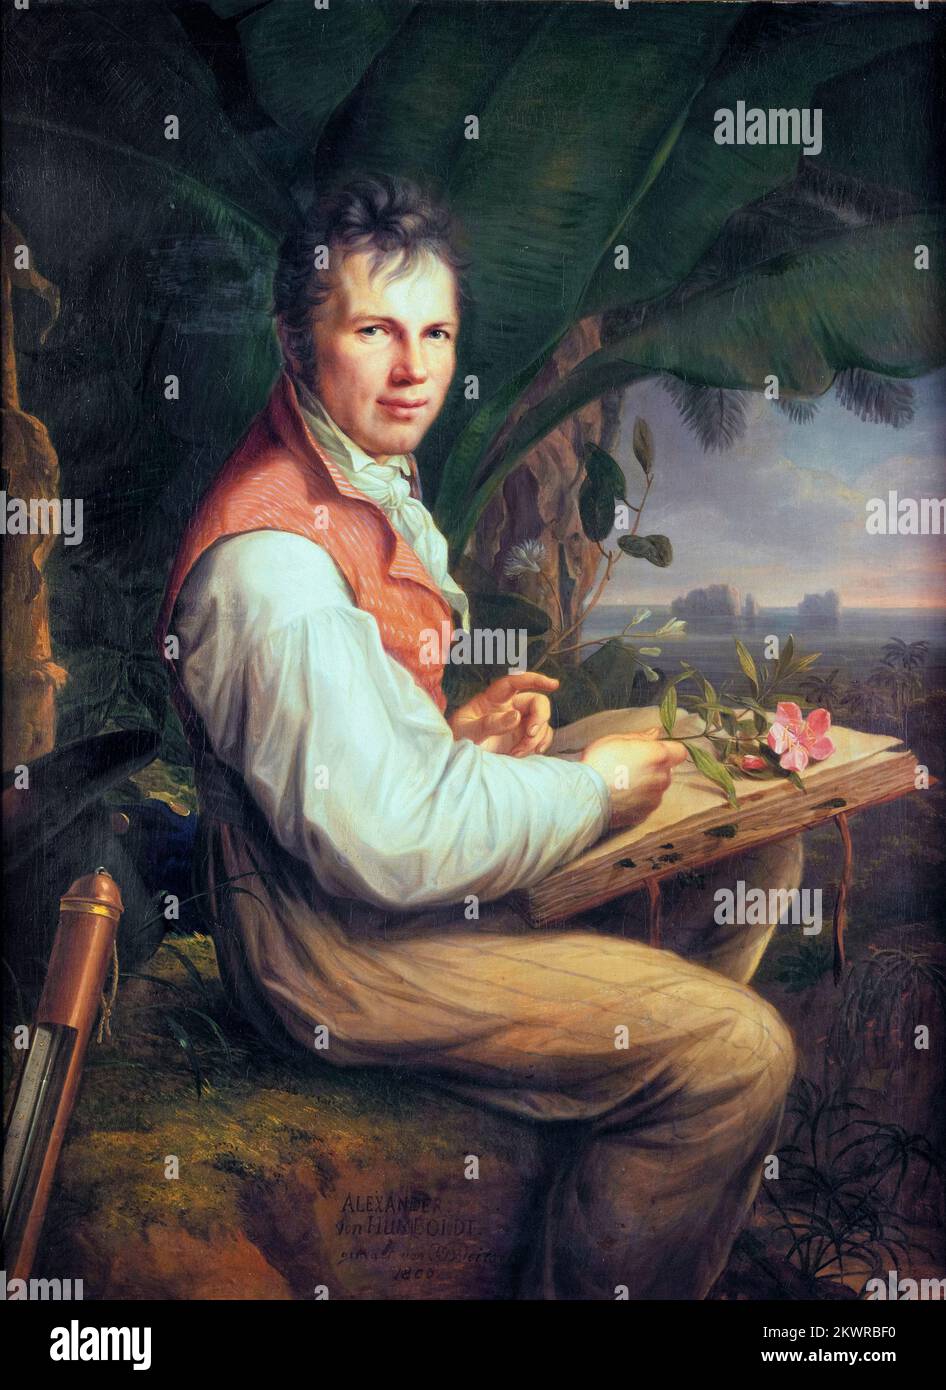 Alexander von Humboldt, (1769-1859), German polymath, geographer, naturalist and explorer, portrait painting in oil on canvas by Friedrich Georg Weitsch, 1806 Stock Photo